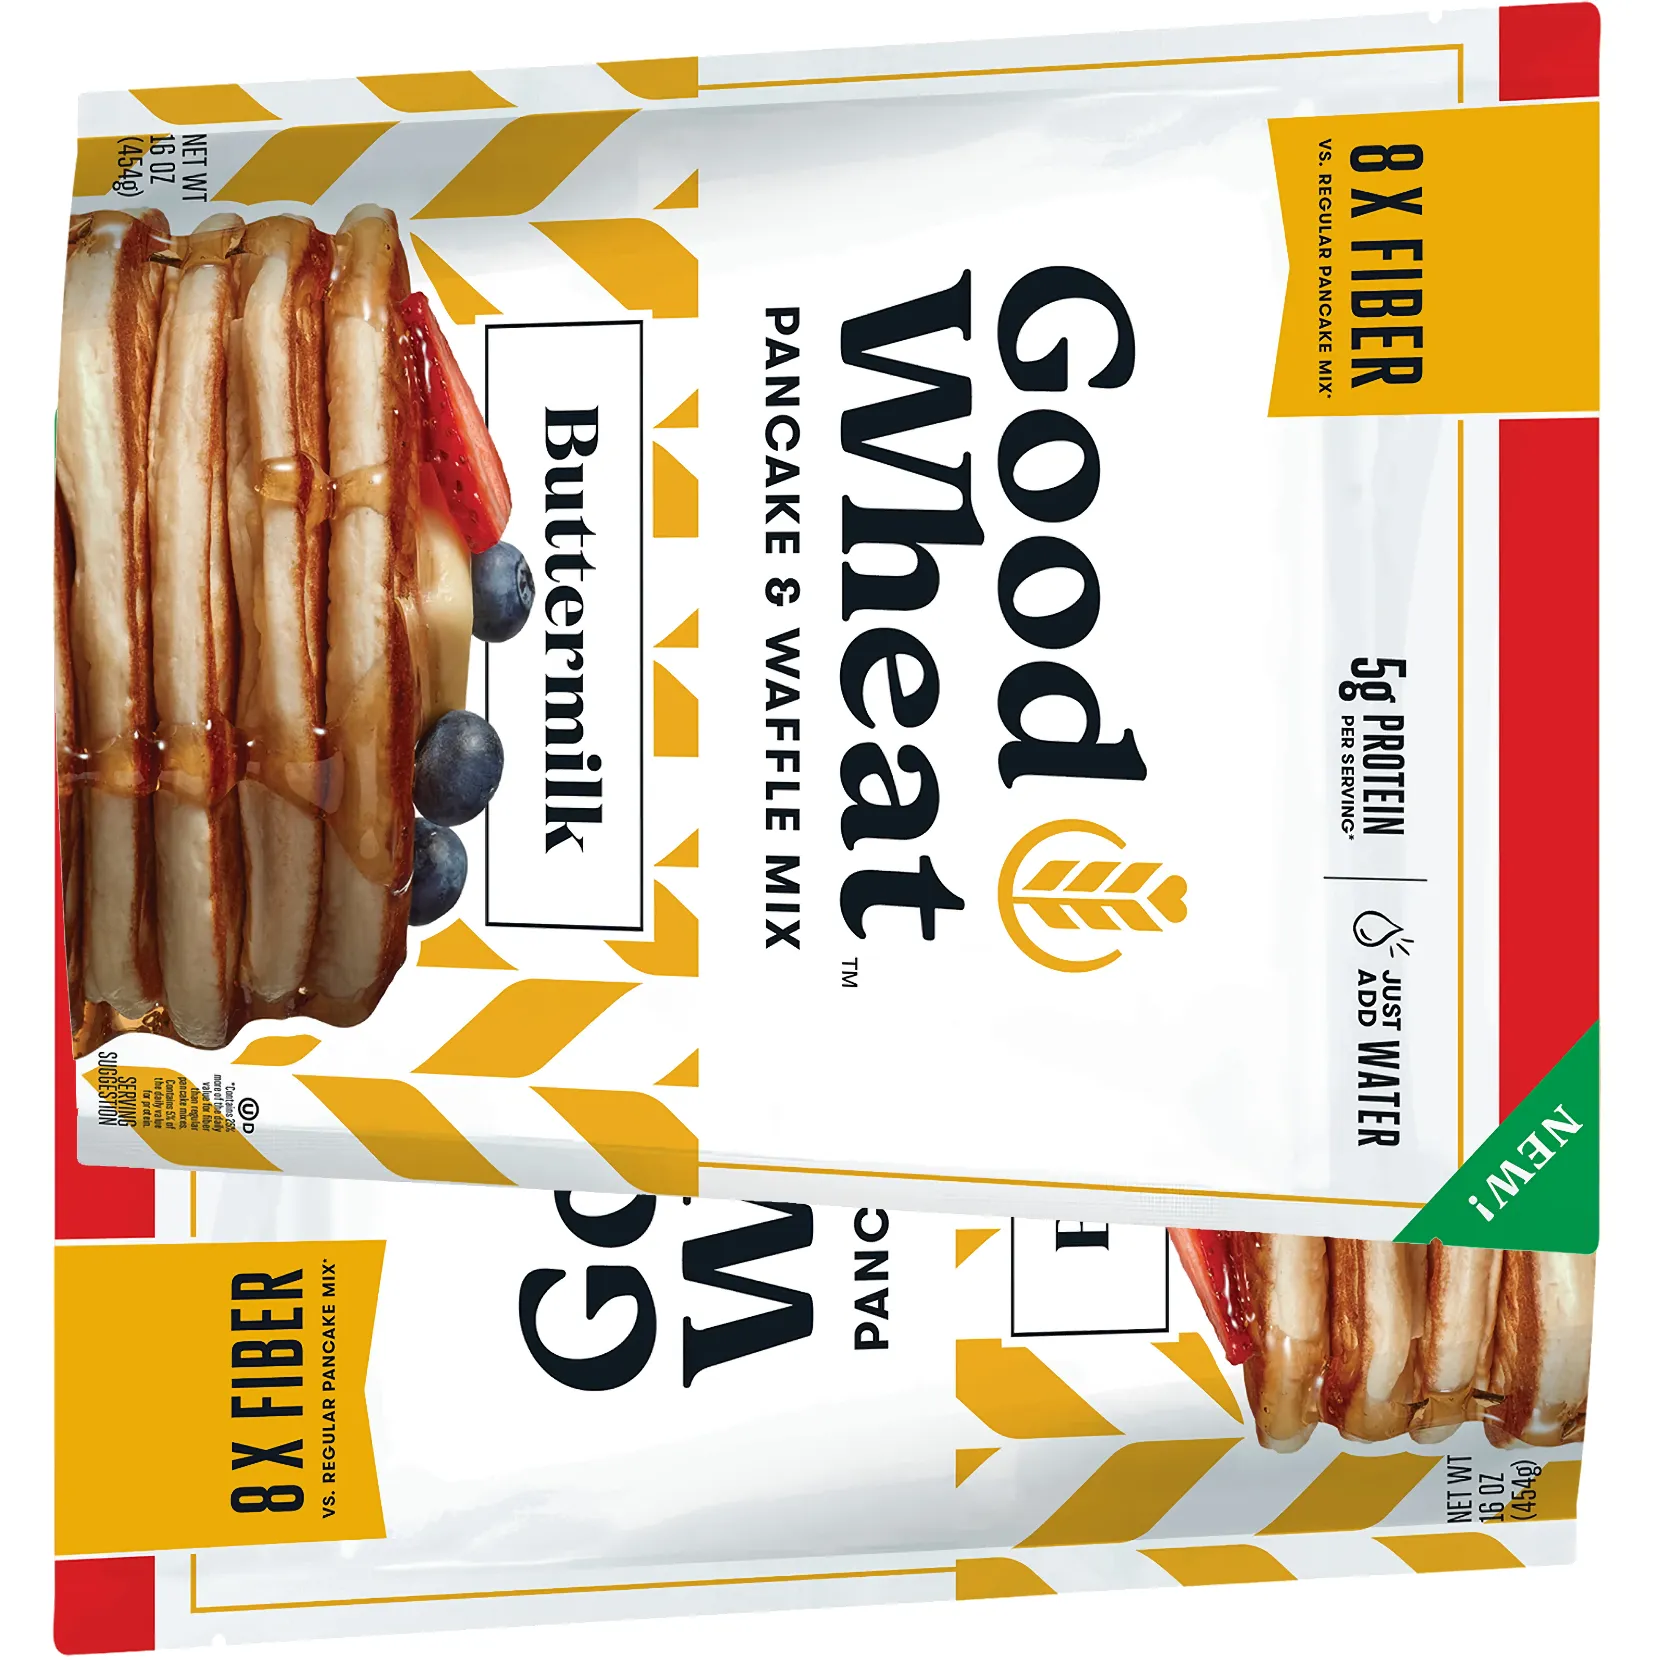 Free Goodwheat Pancake & Waffle Mix